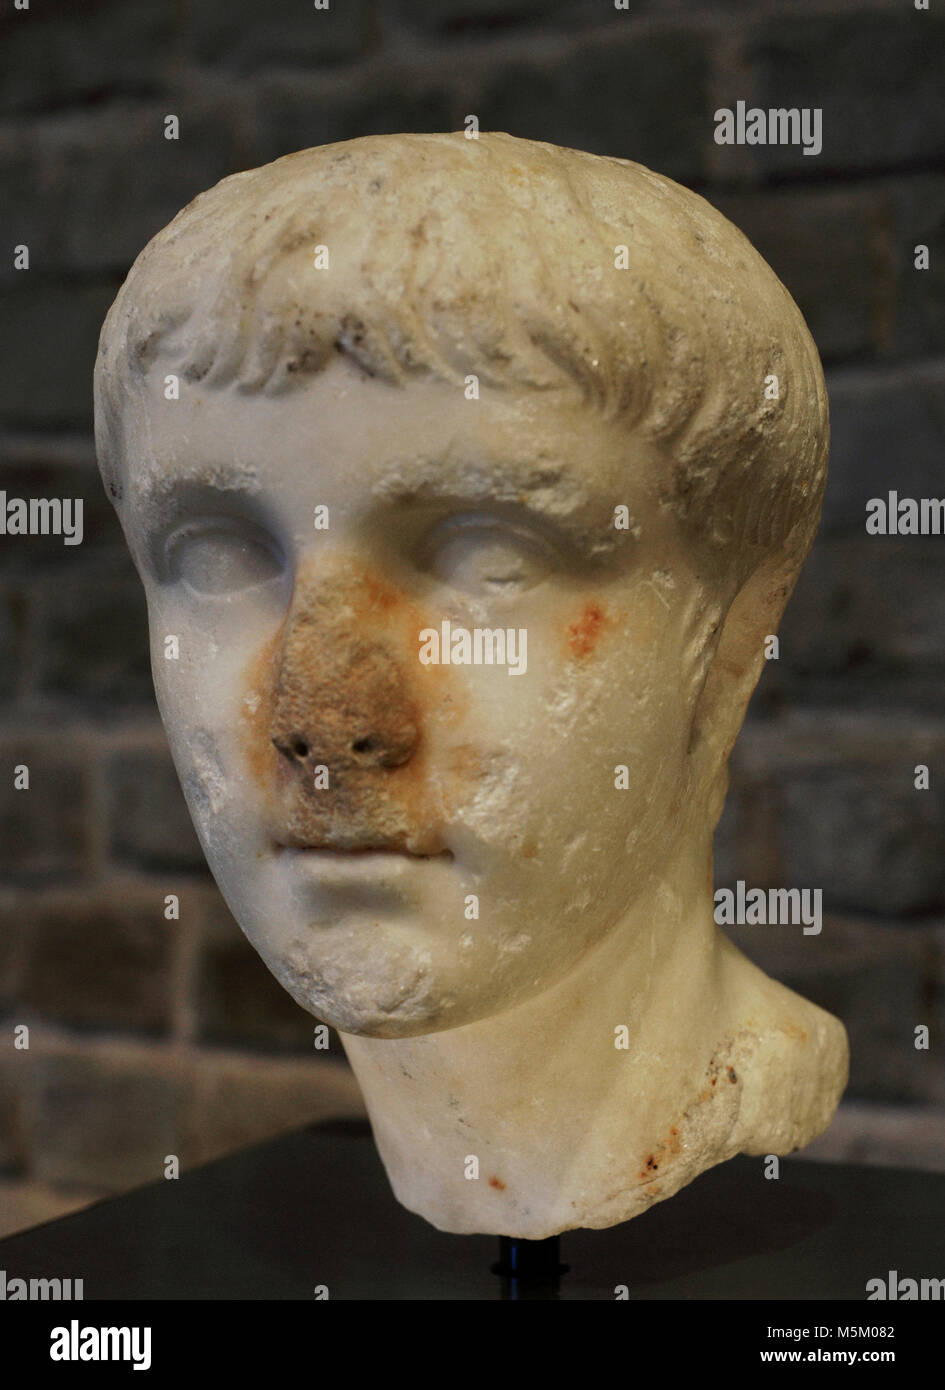 Caligula (Gaius Julius Caesar Augustus Germanicus) (12-41). El emperador romano. Busto. Fecha entre 30-40 AD. Museo Roman-Germanic. Colonia. Alemania. Foto de stock